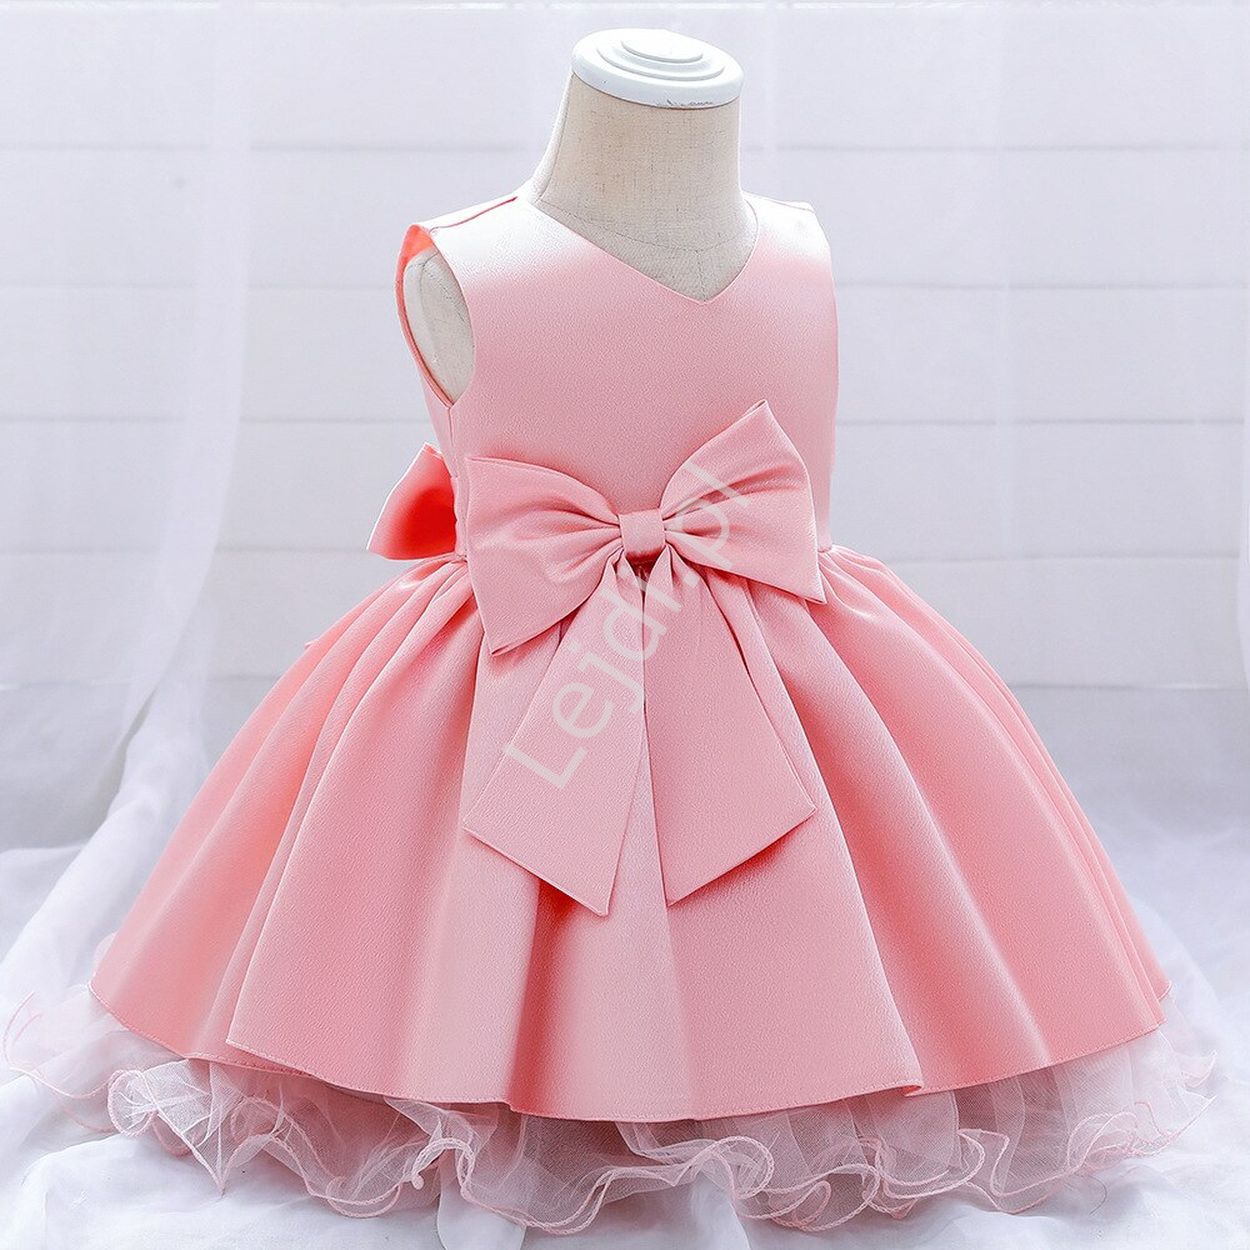 Różowa sukienka dla dziewczynki na wesele, na bal, święta